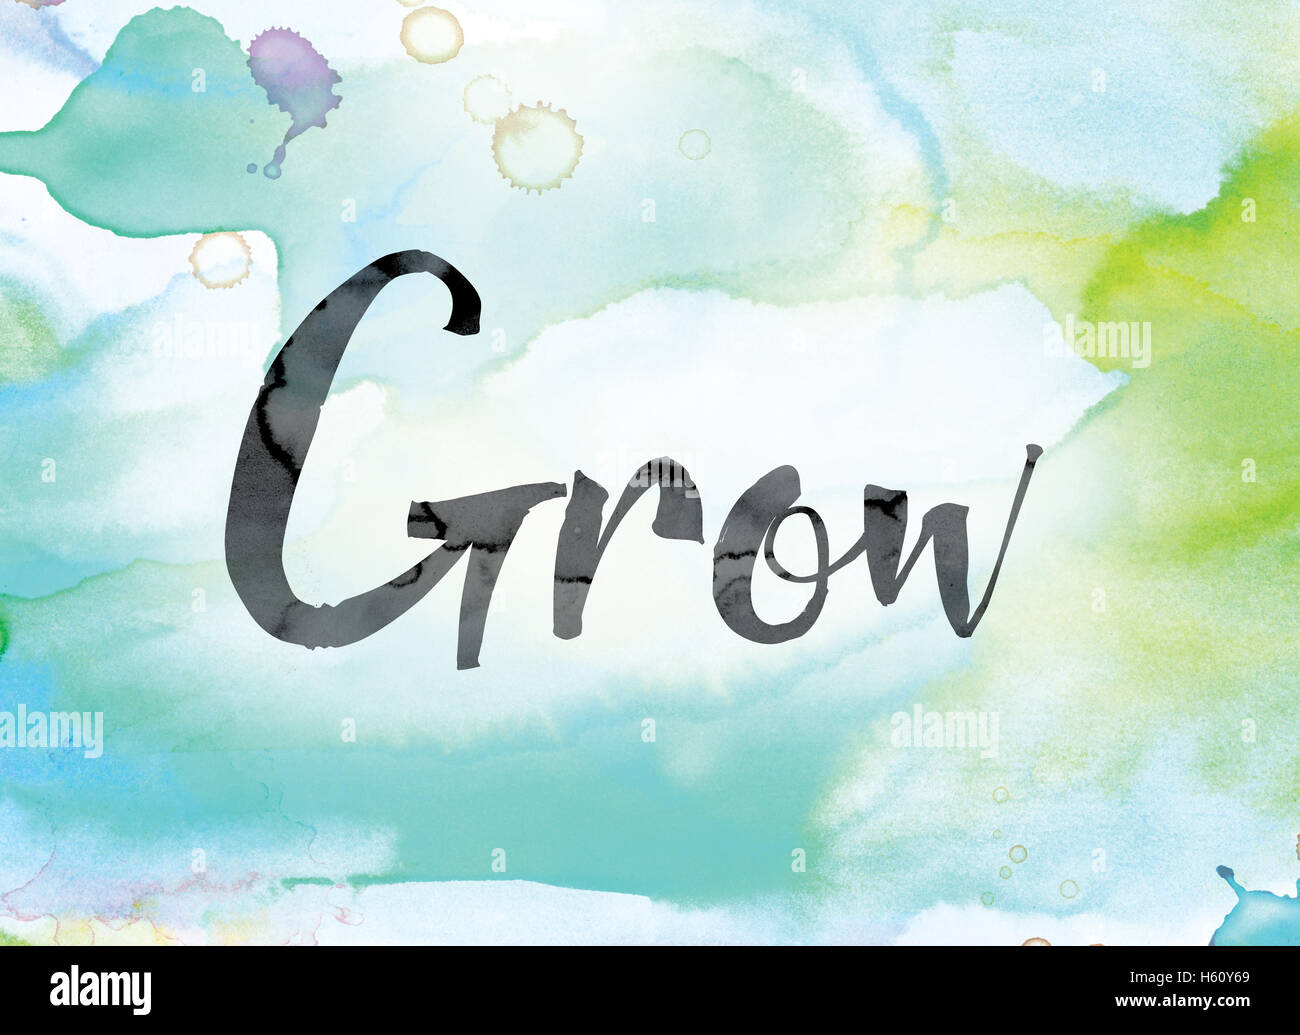 Das Wort "Grow" übermalt eine bunte Aquarell gewaschenen Hintergrund Konzept und Design in schwarzer Tinte. Stockfoto